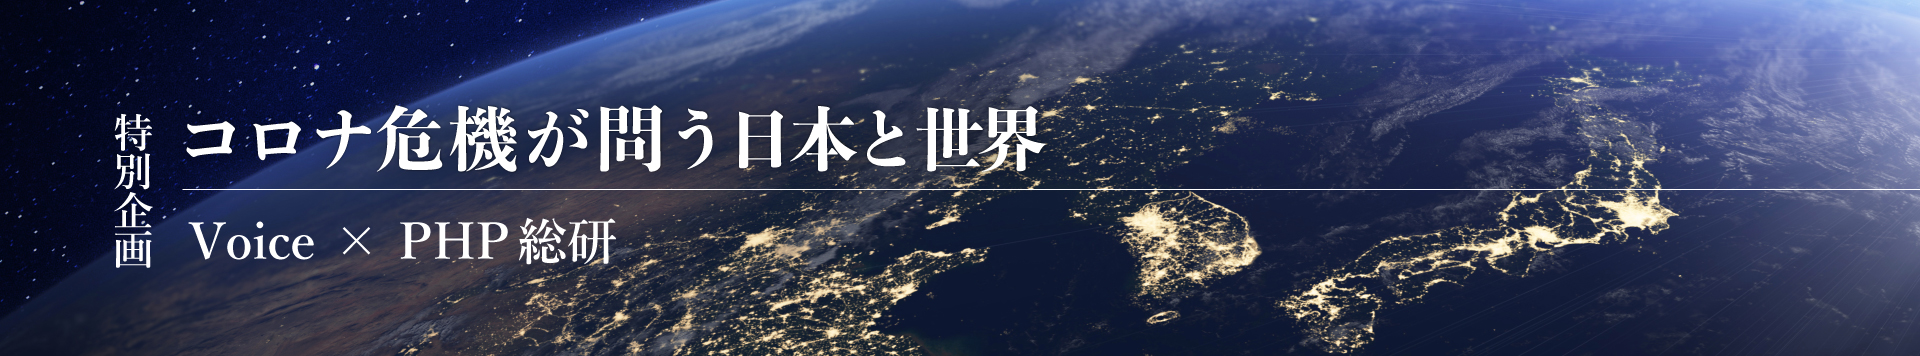 コロナ危機が問う日本と世界 Voice x PHP総研